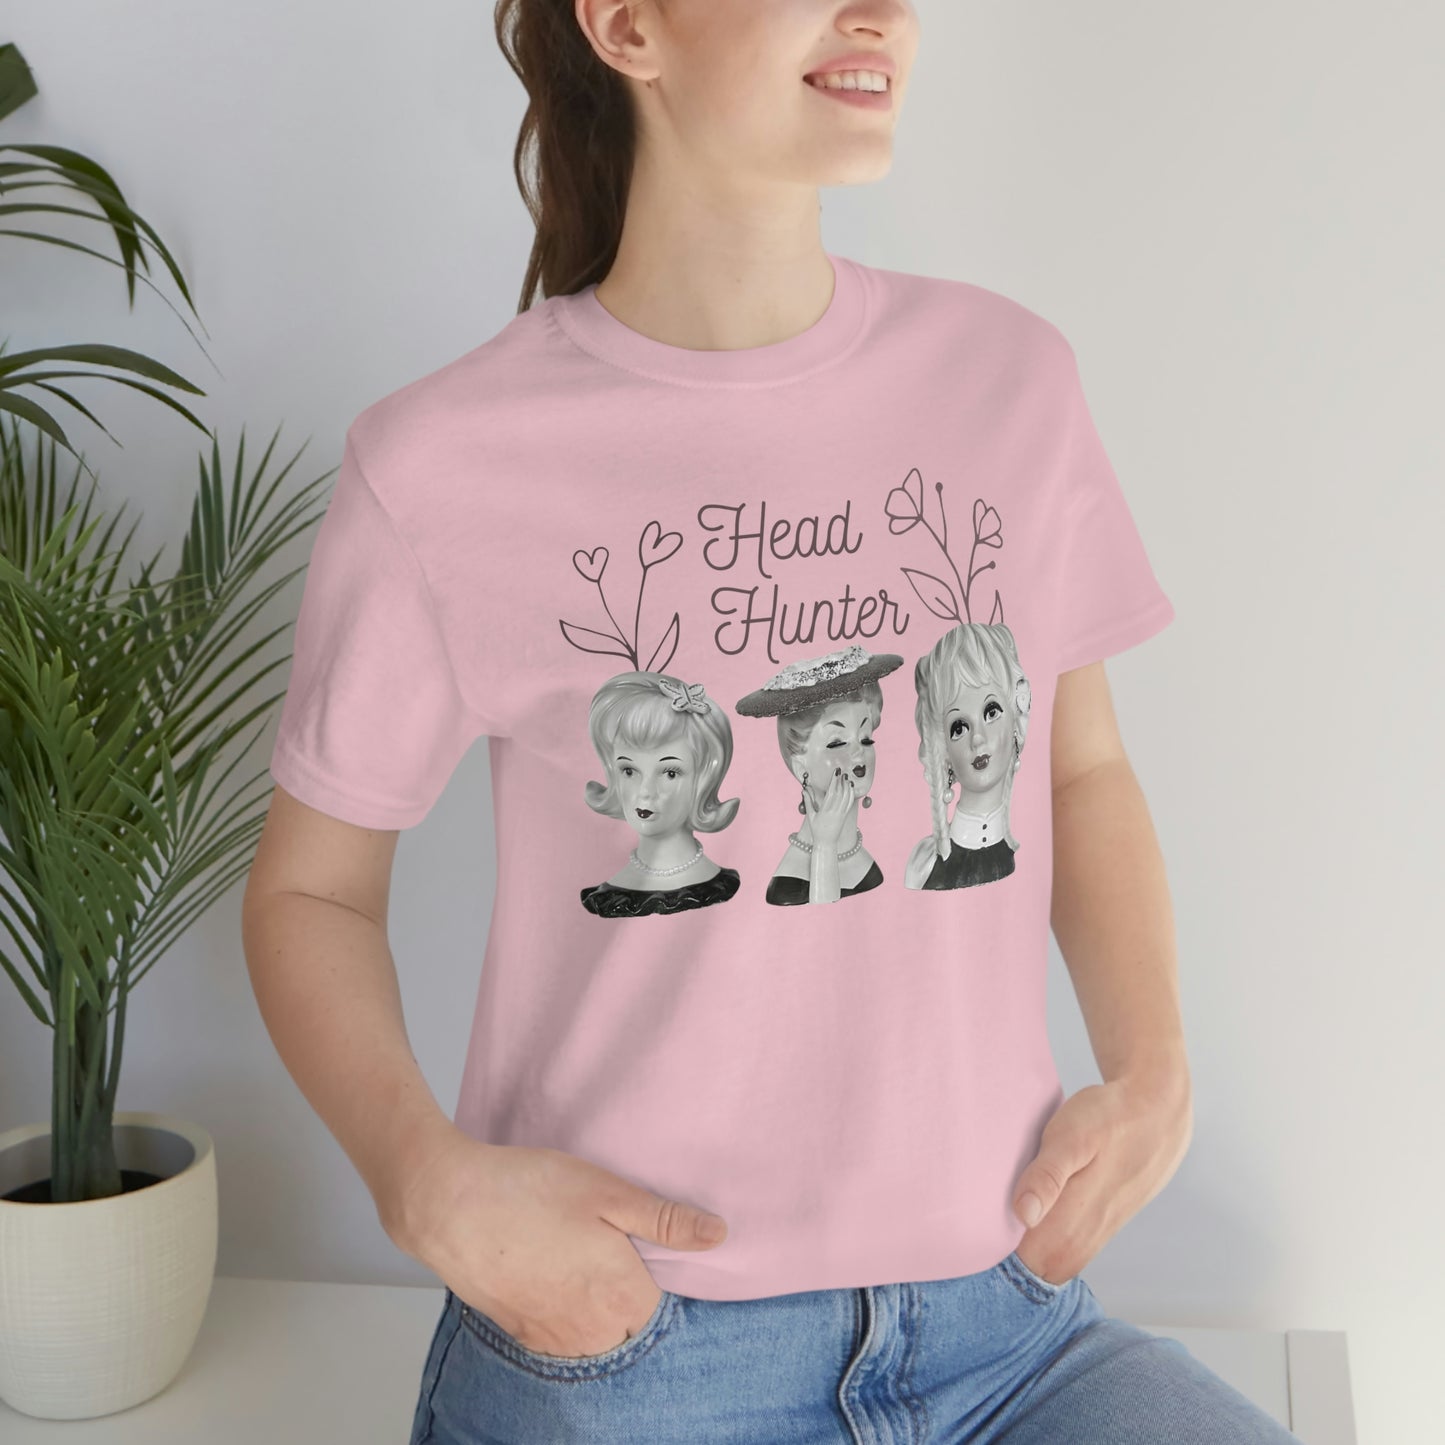 Lady Head Vase - Head Hunter - Vintage Head Vase Shirt - Unisex Jersey Short Sleeve Tee